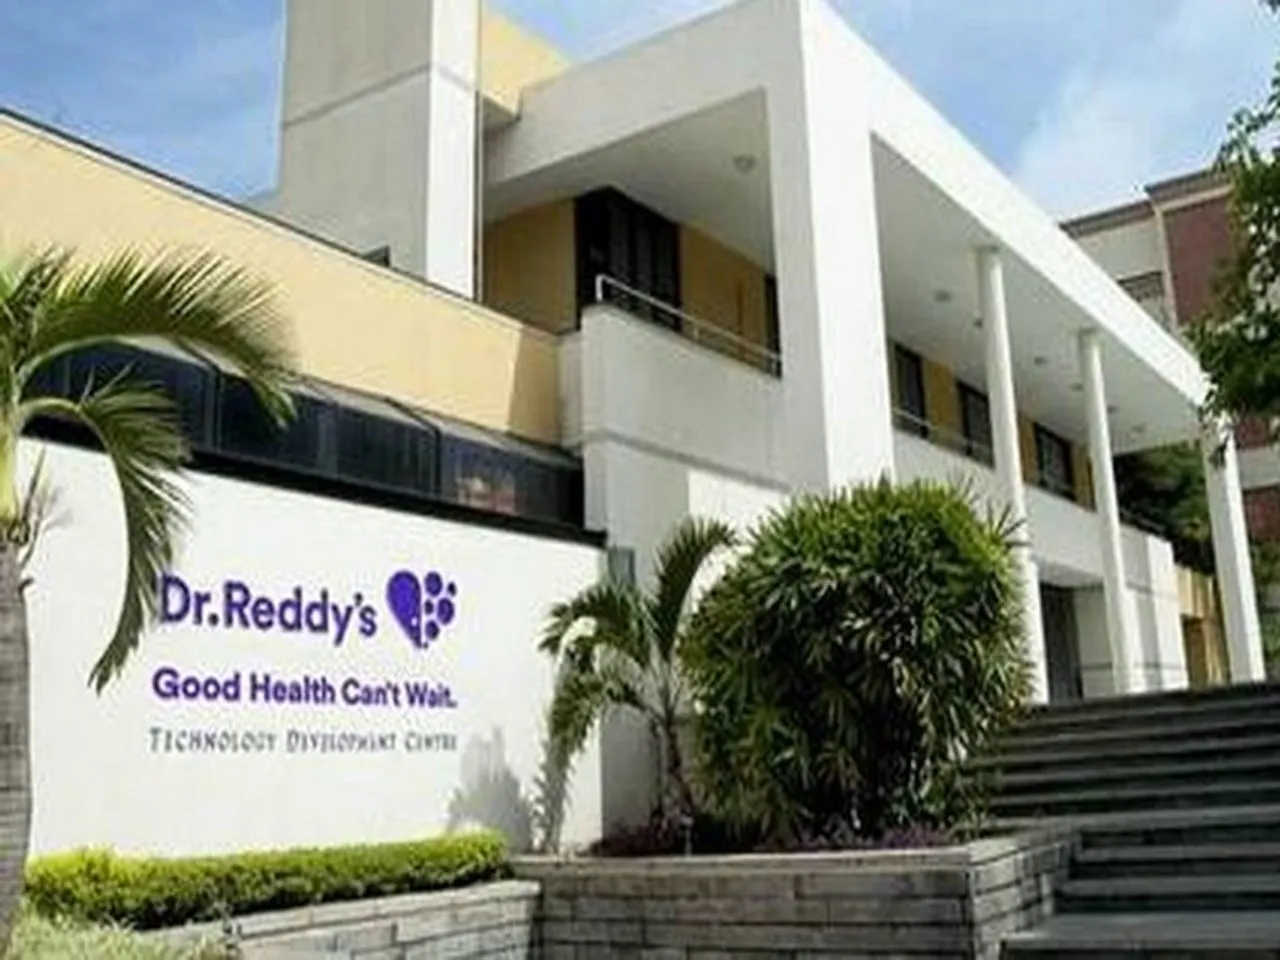 Dr.Reddy's.jpg